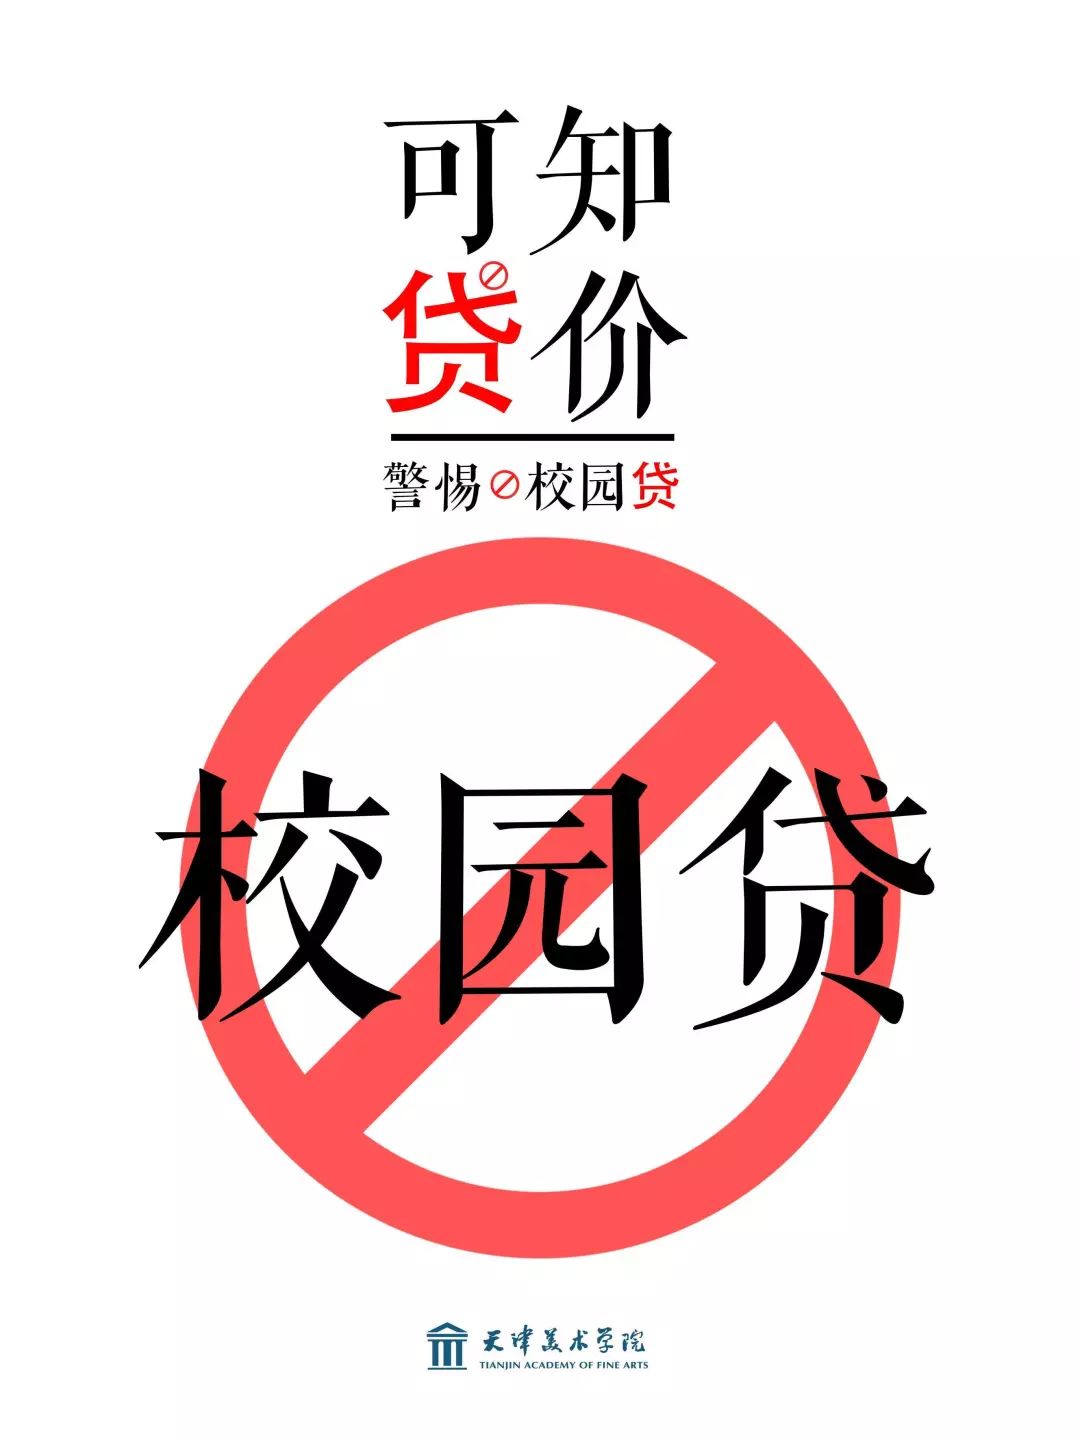 动态| 天津美术学院学子向"校园贷"说不!